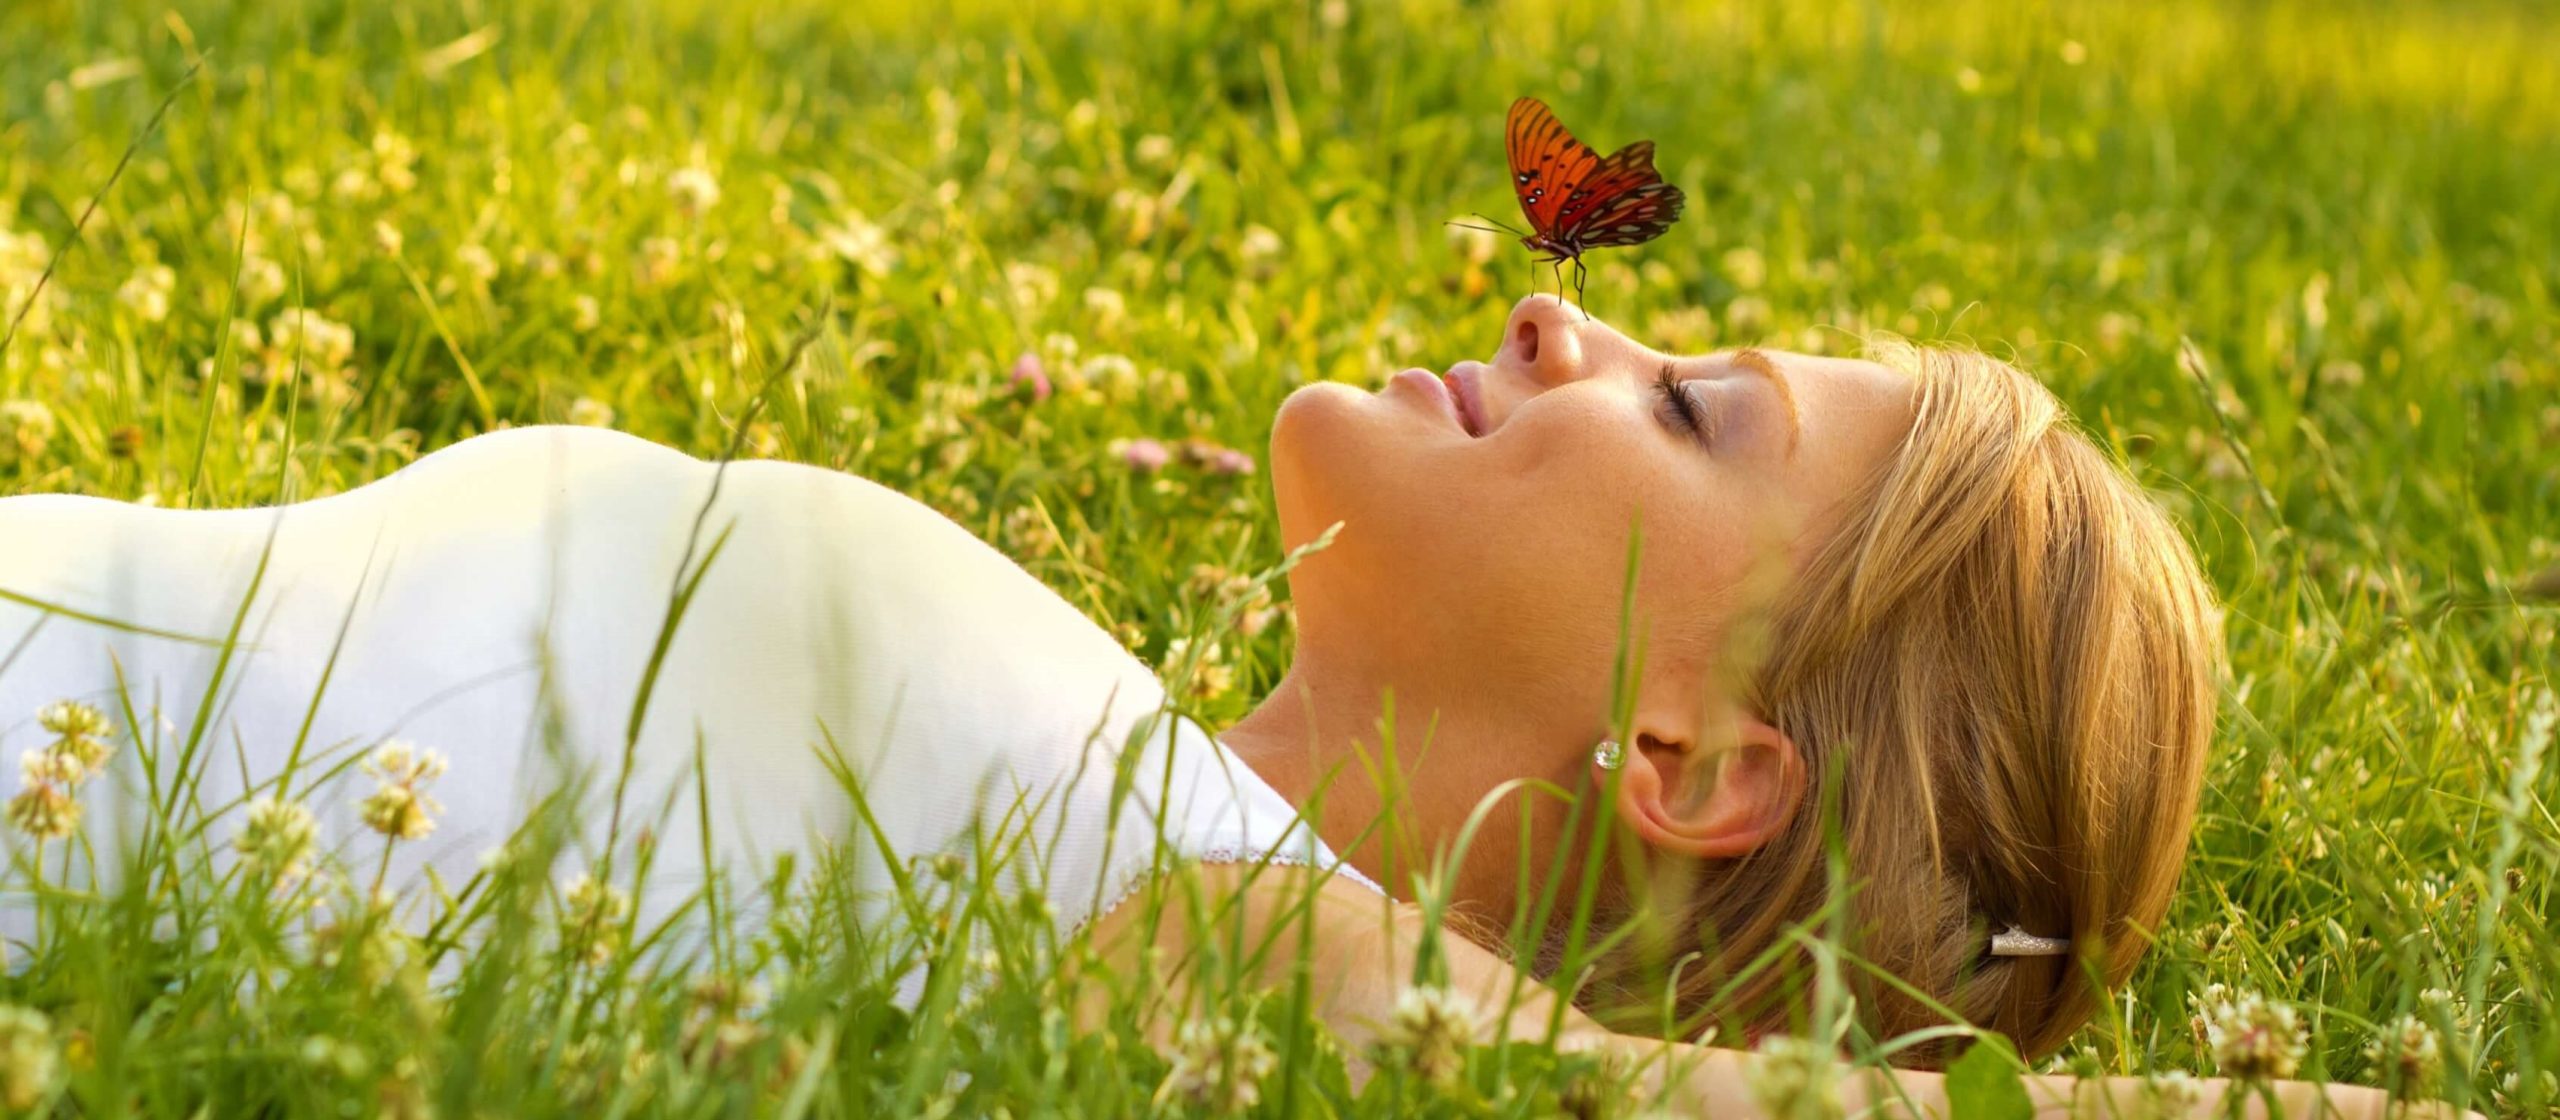 А пока наслаждаемся жизнью. Лежит на траве. Женщина лежит на траве. Радость жизни природа. Девушка в траве.